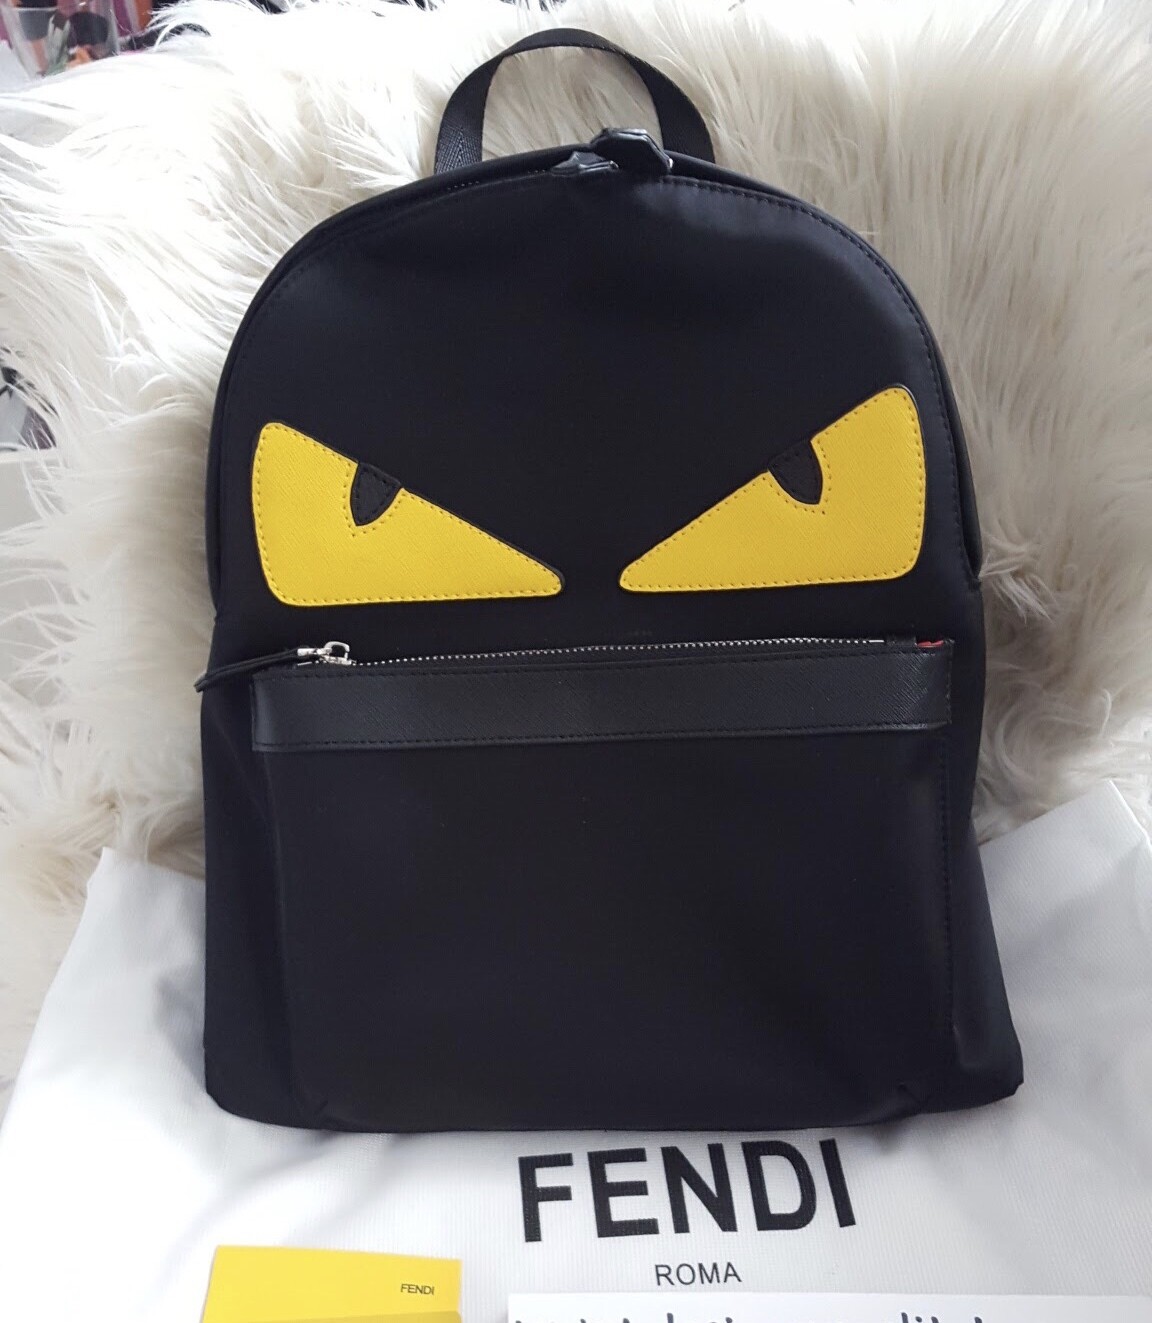 IN STOCK Fendi Black Nylon Leather Monster Backpack Bag - Unisex